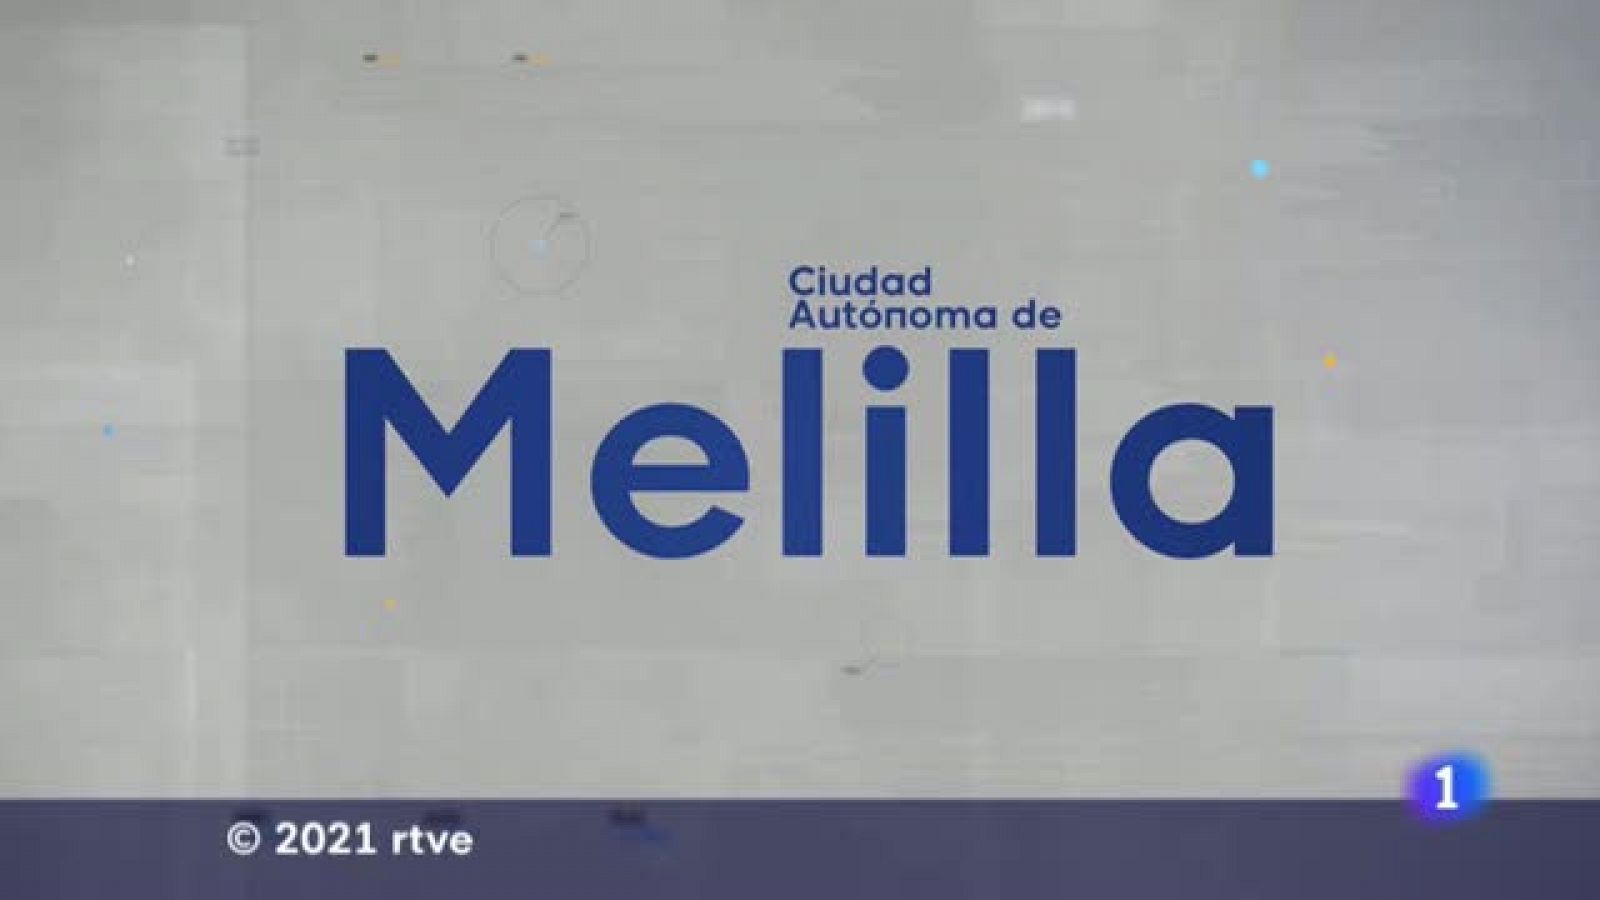 La Noticia de Melilla - 09/08/2021